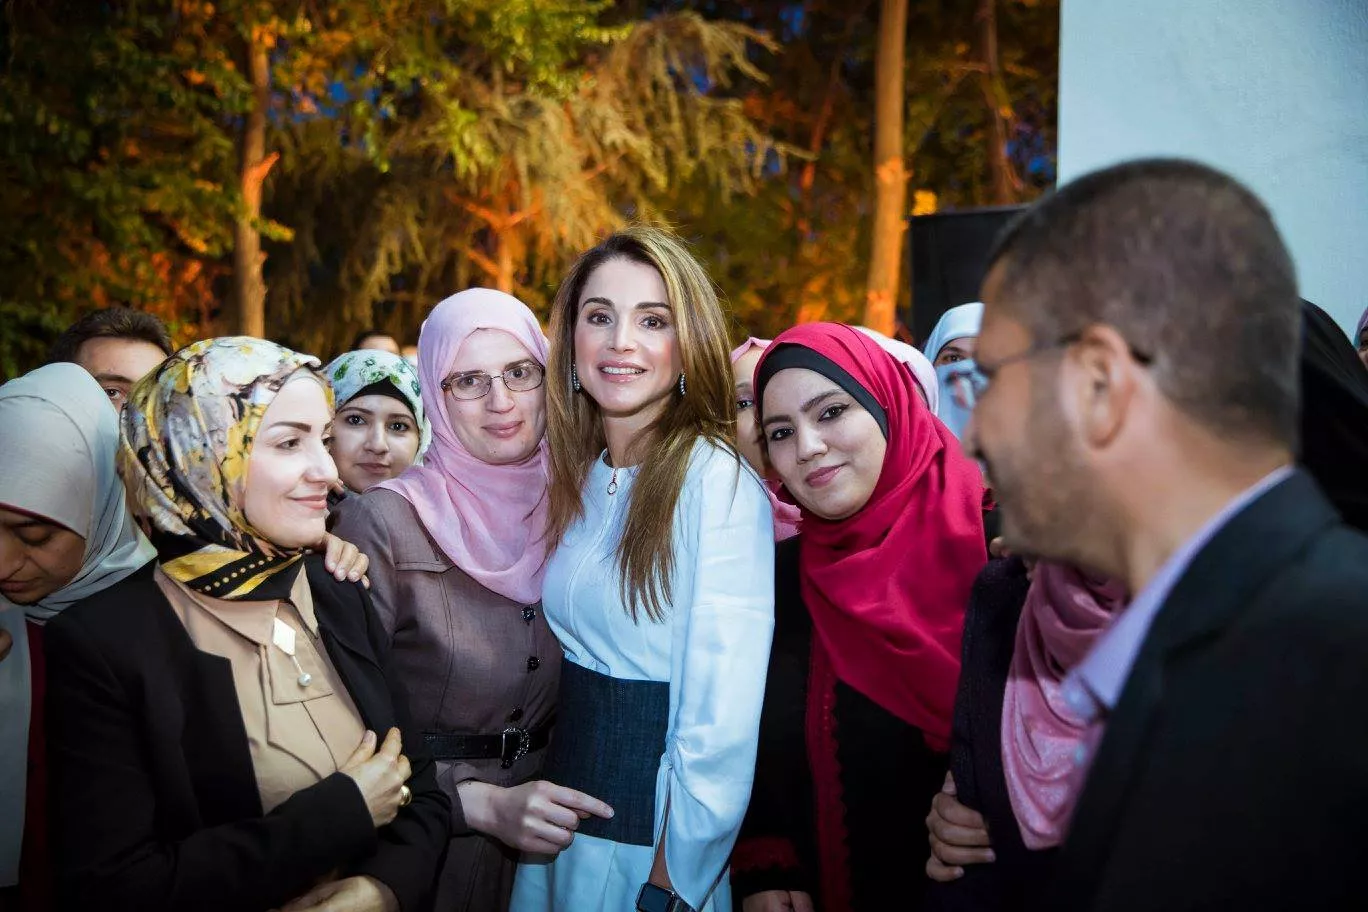 الملكة رانيا تستوحي إطلالتها من منصّات عروض ربيع 2017 بتحفّظ وأناقة